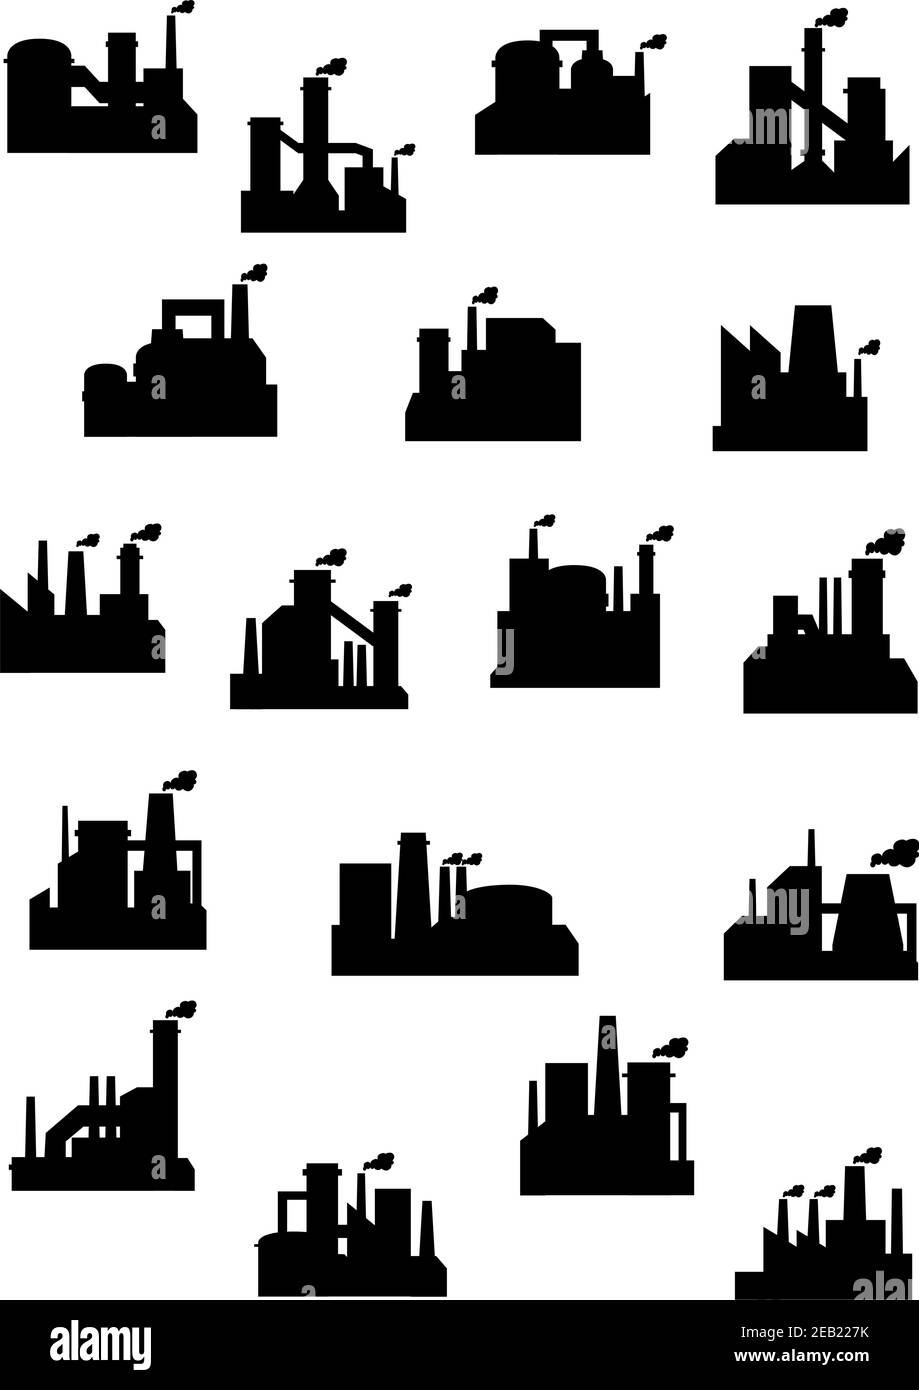 Les usines industrielles et les raffineries affichent des silhouettes noires de installations avec cheminées qui brandent de la fumée polluante Illustration de Vecteur